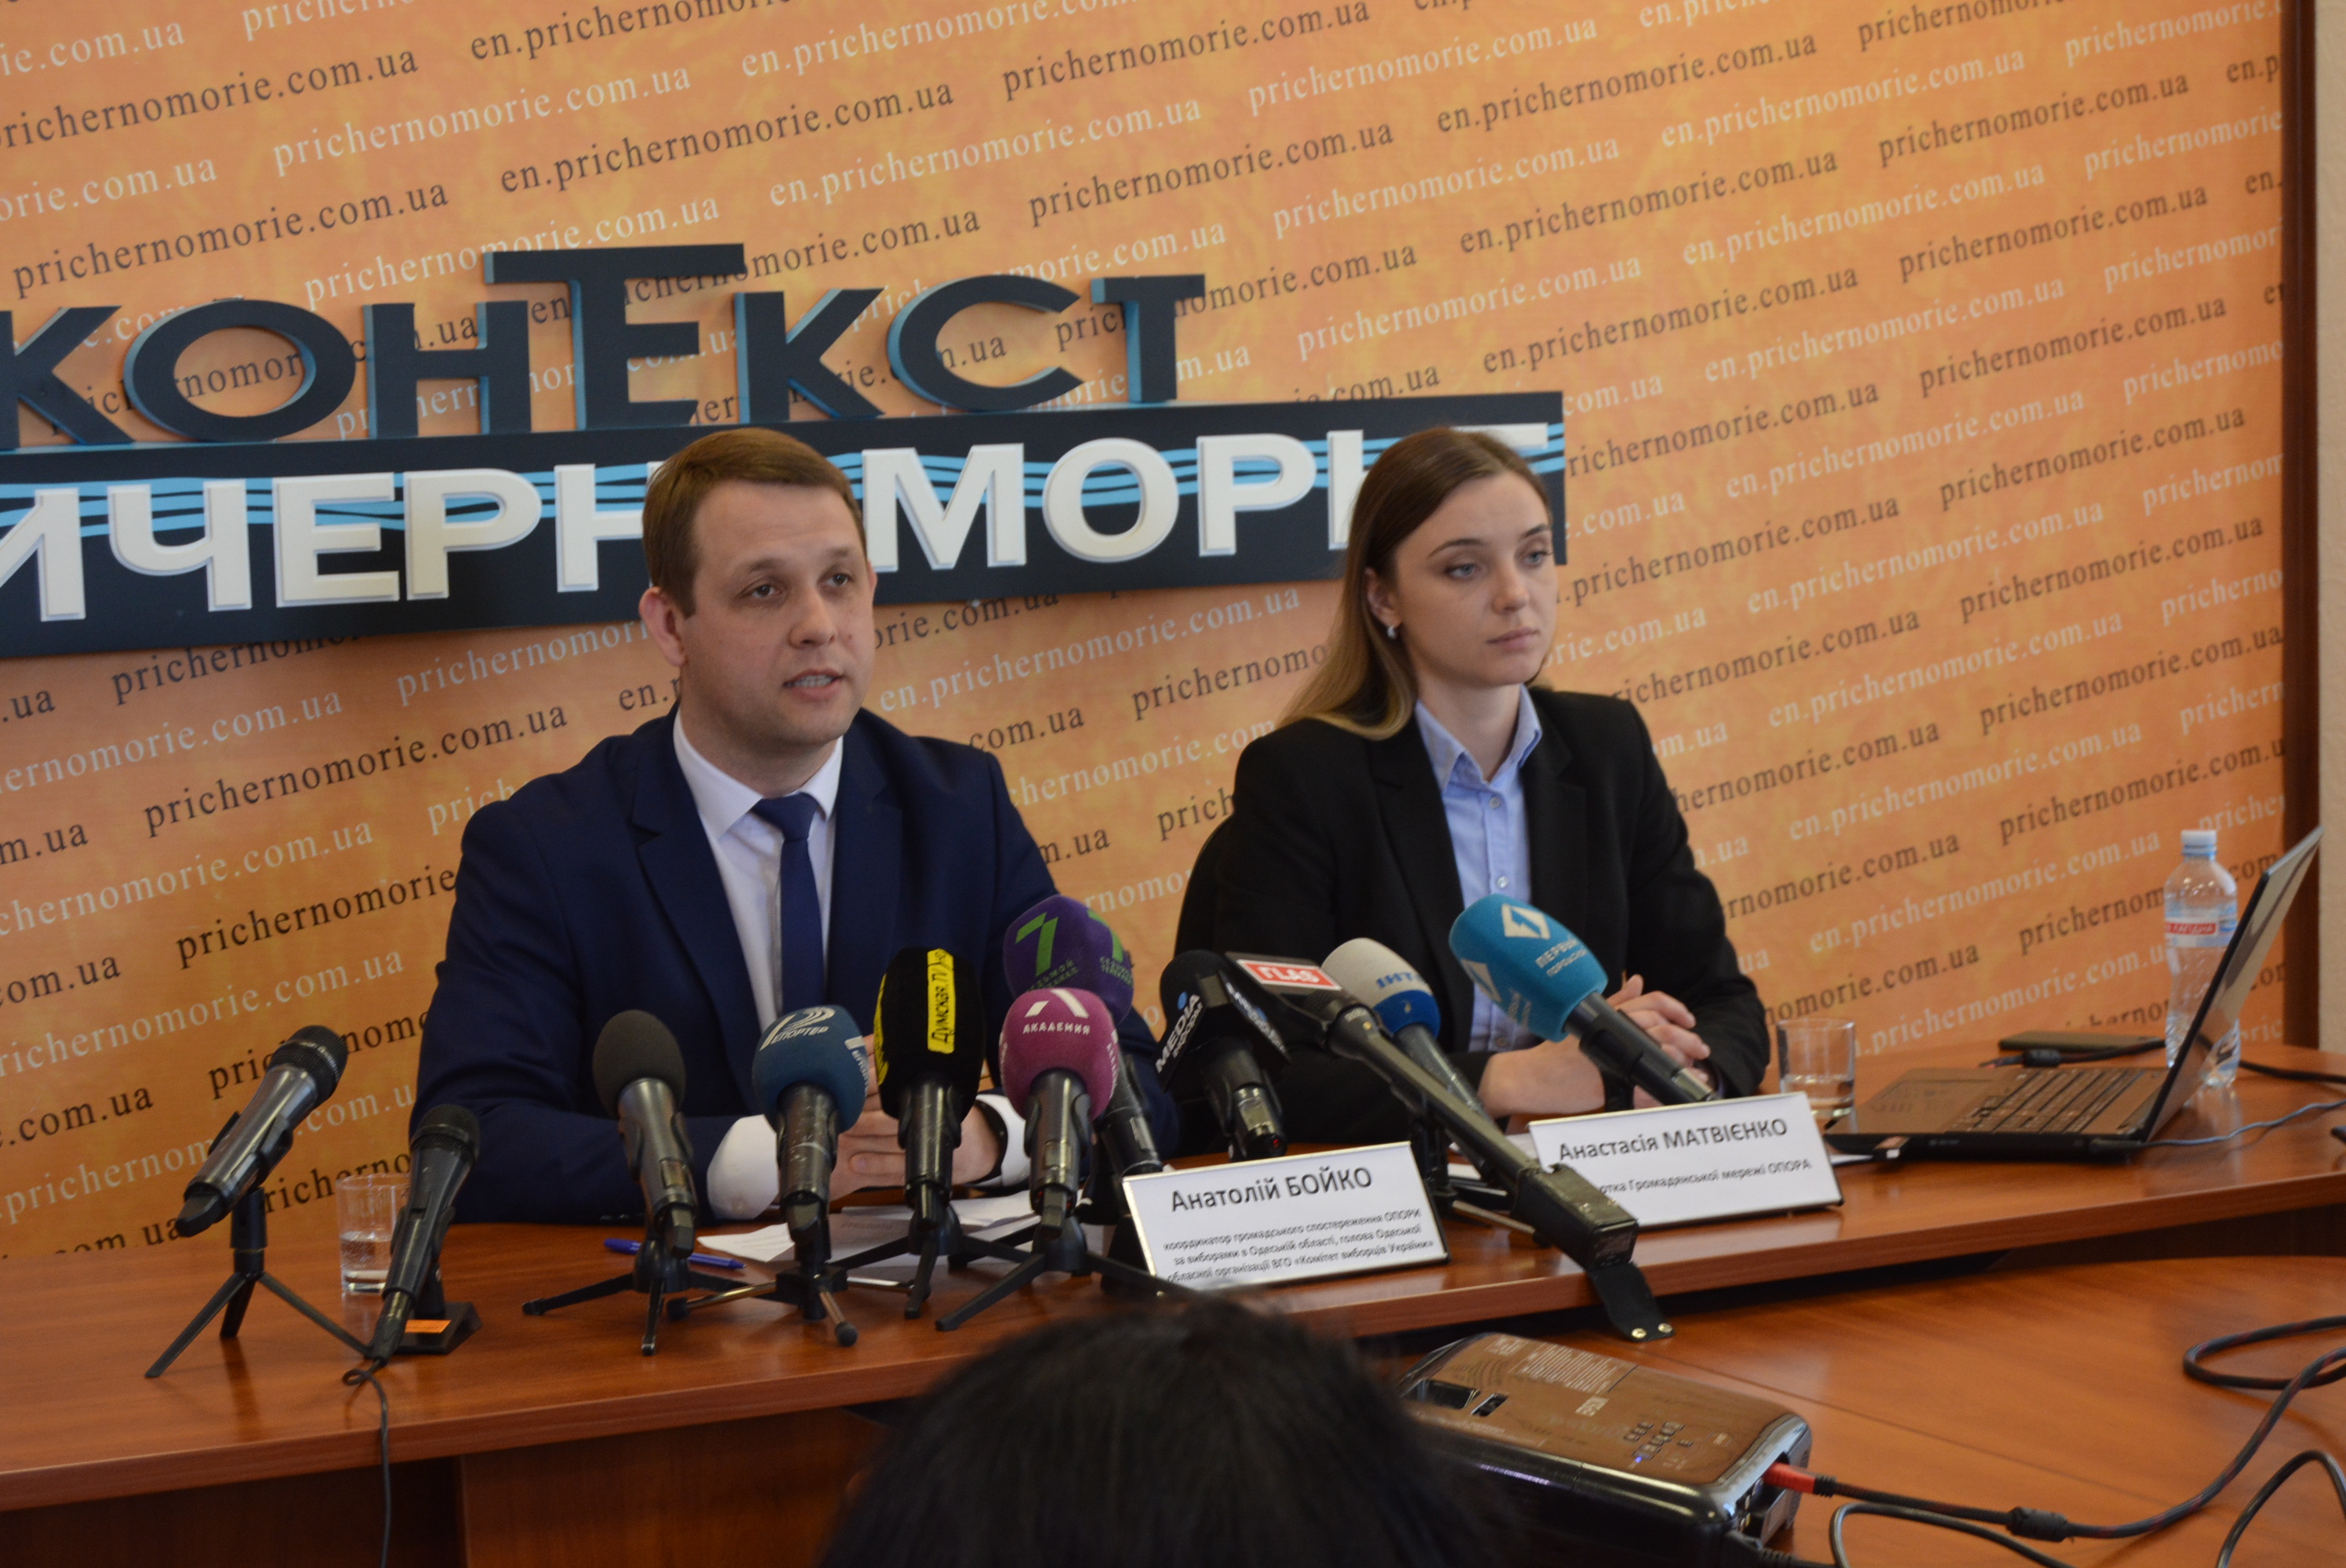 Підсумки дня голосування та агітаційної кампанії перед другим туром на Одещині: без масштабних порушень, але з суттєвими недоліками